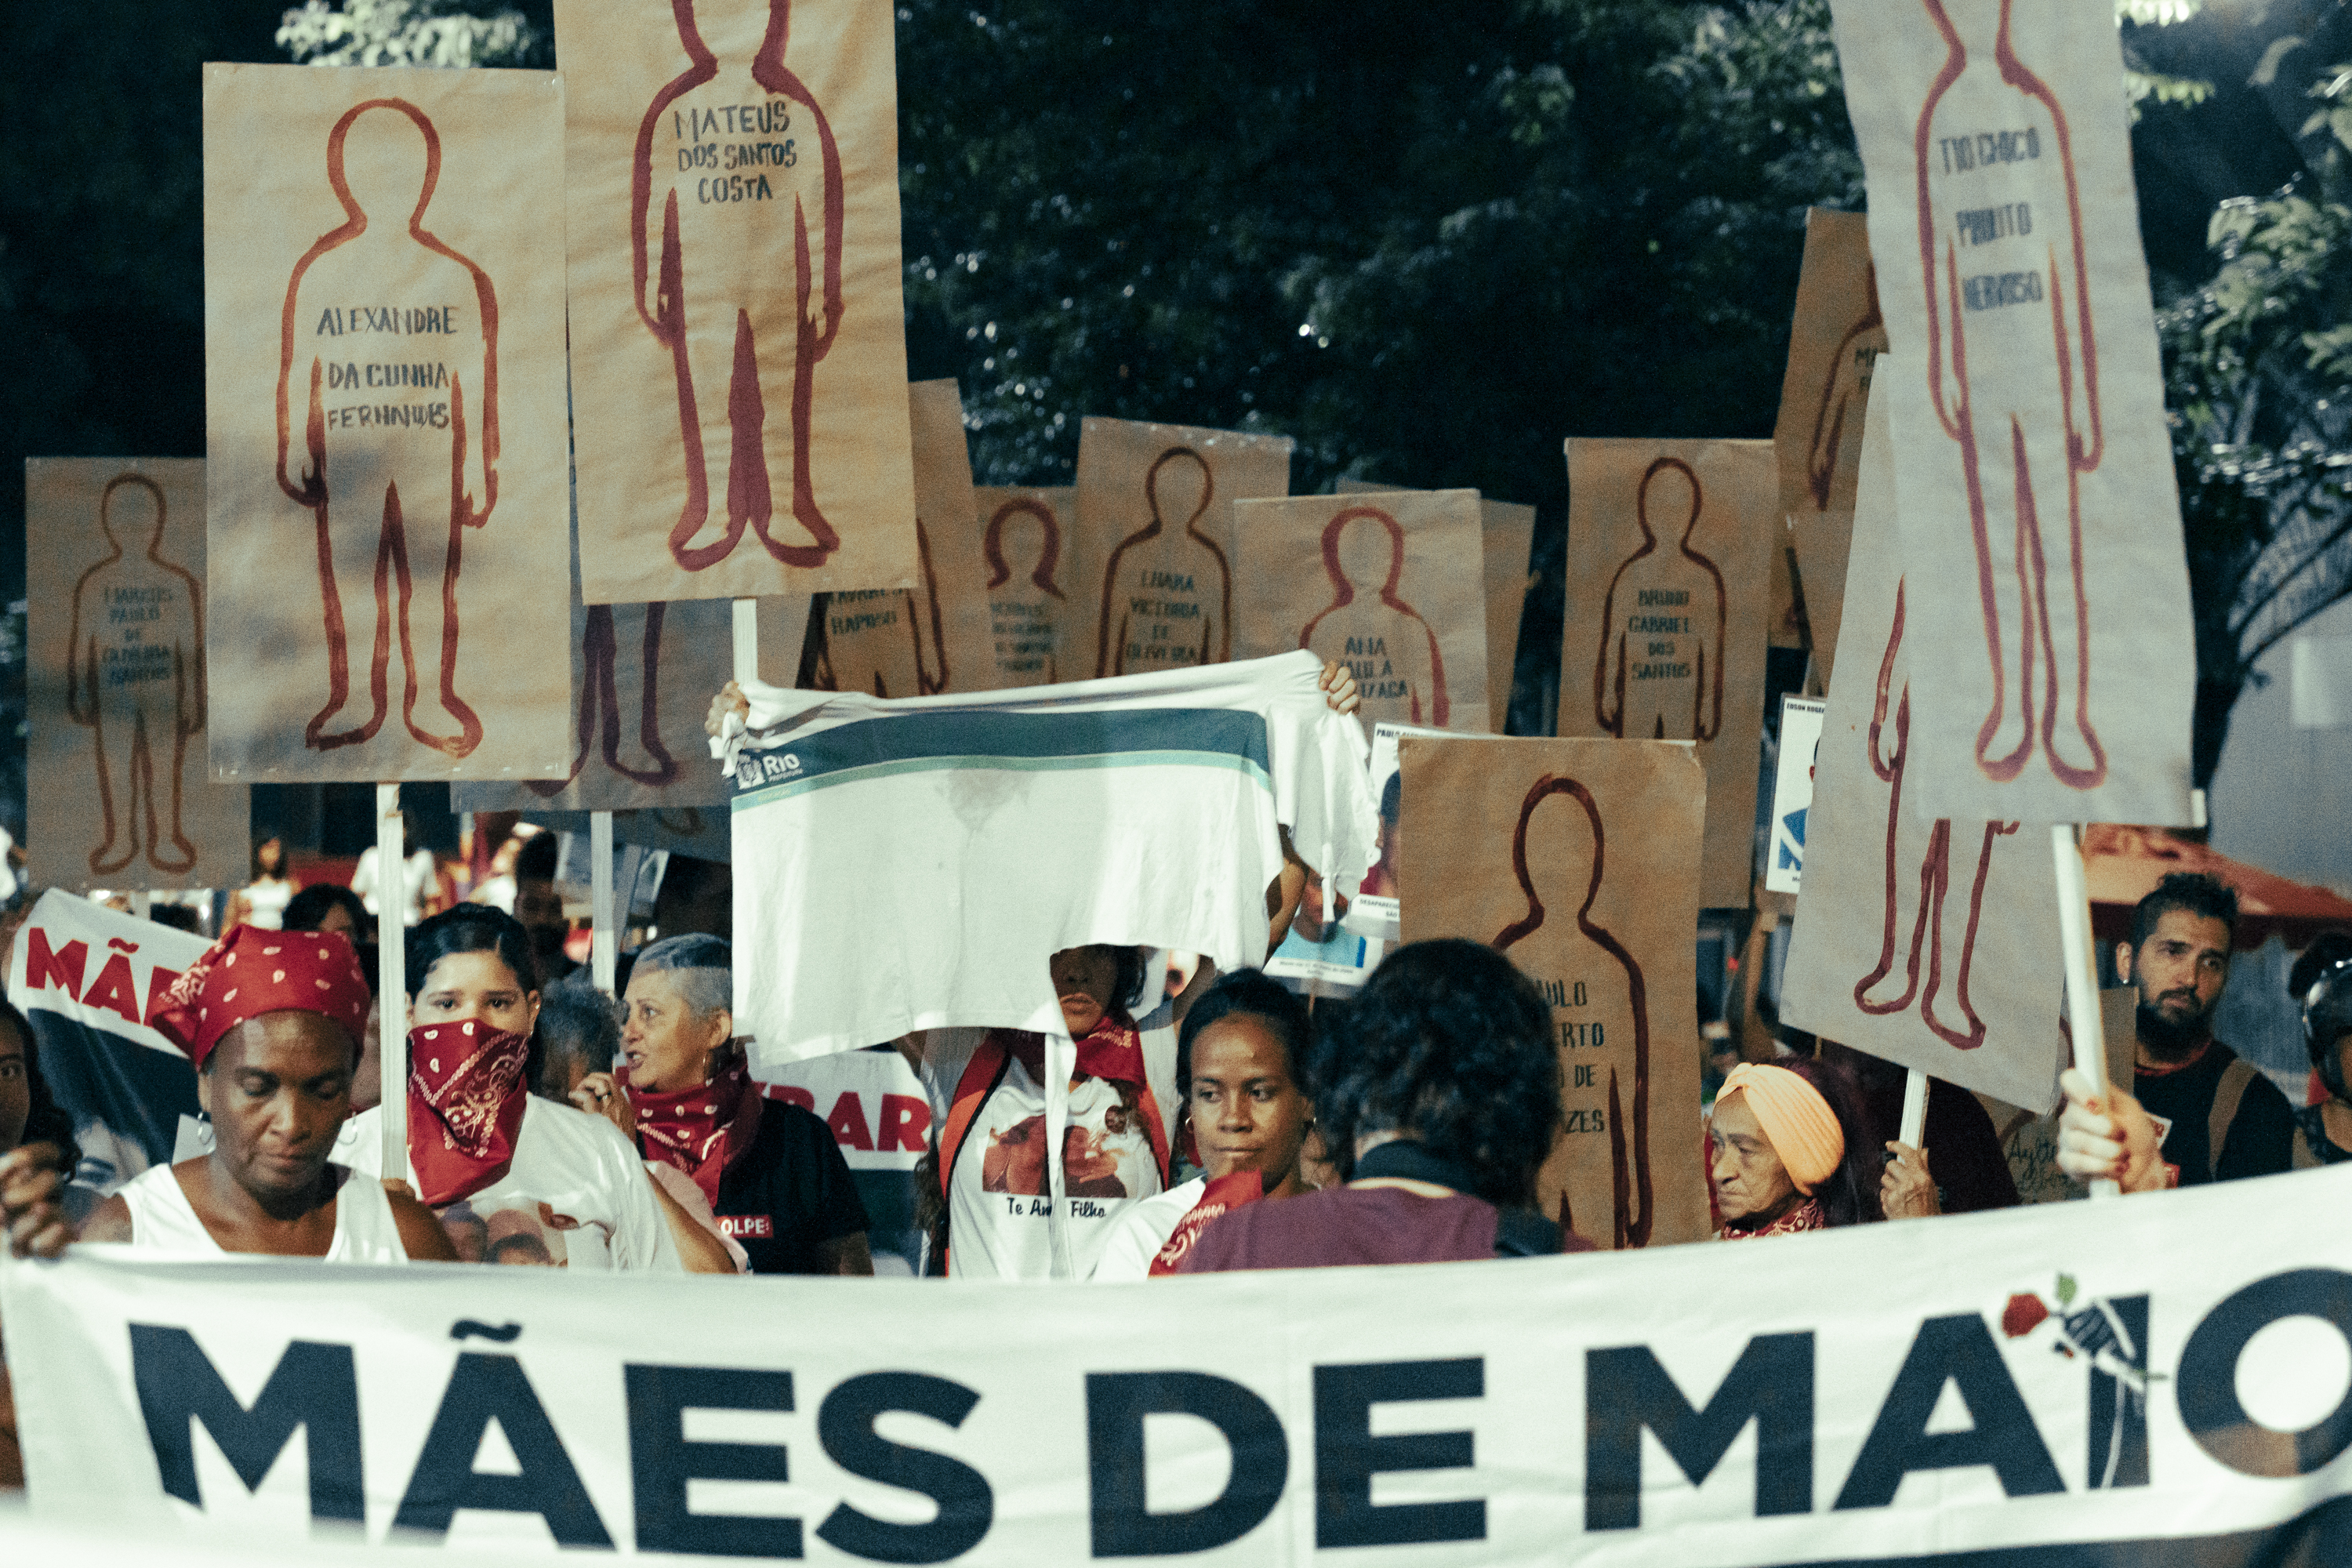 Mães e familiares de pessoas mortas durante os Crimes de Maio em caminhada do Cordão da Mentira